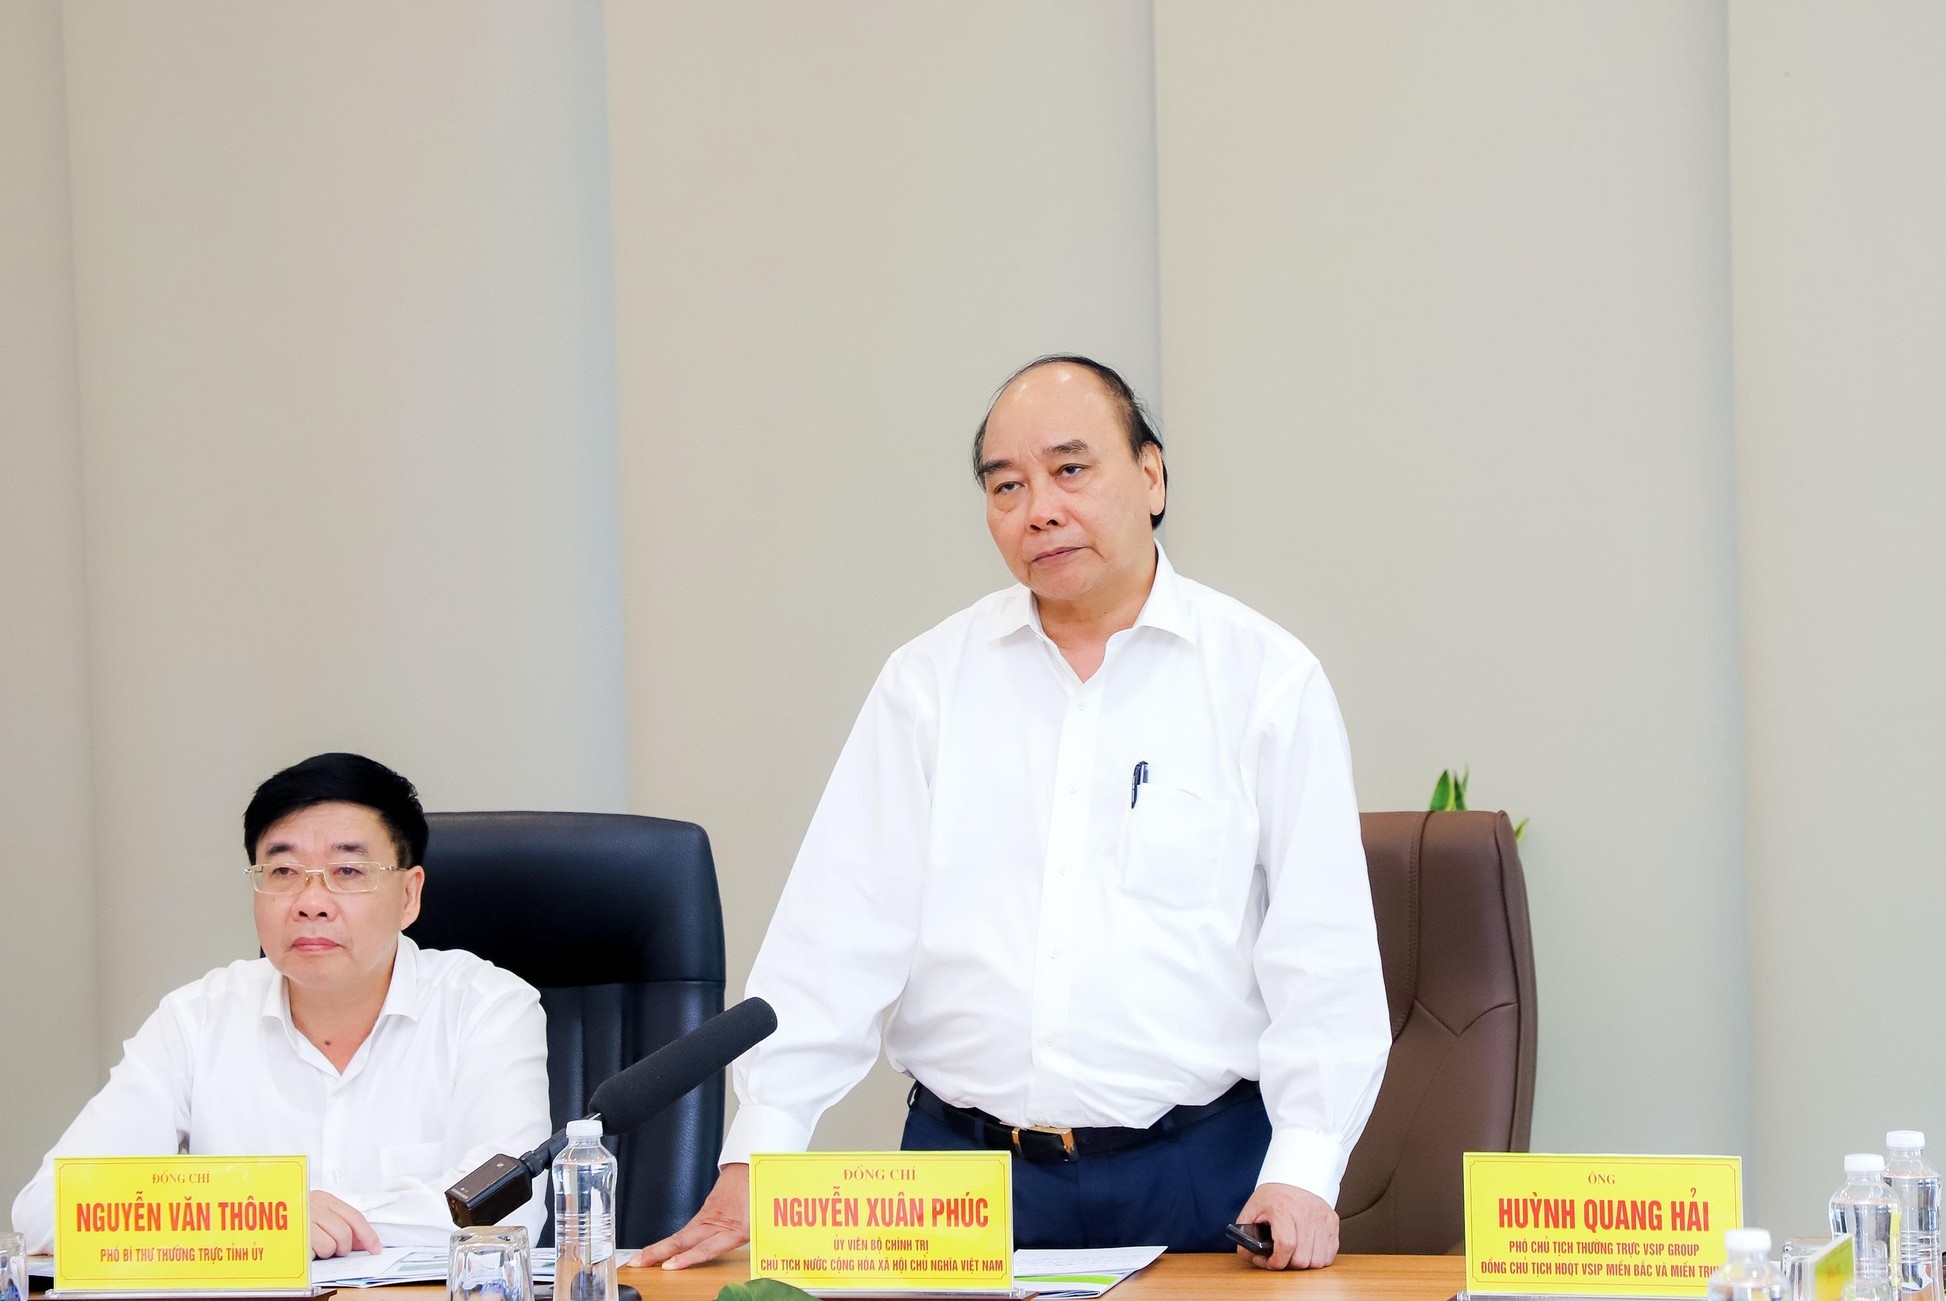 Chủ tịch nước Nguyễn Xuân Phúc thăm Khu công nghiệp VSIP Nghệ An